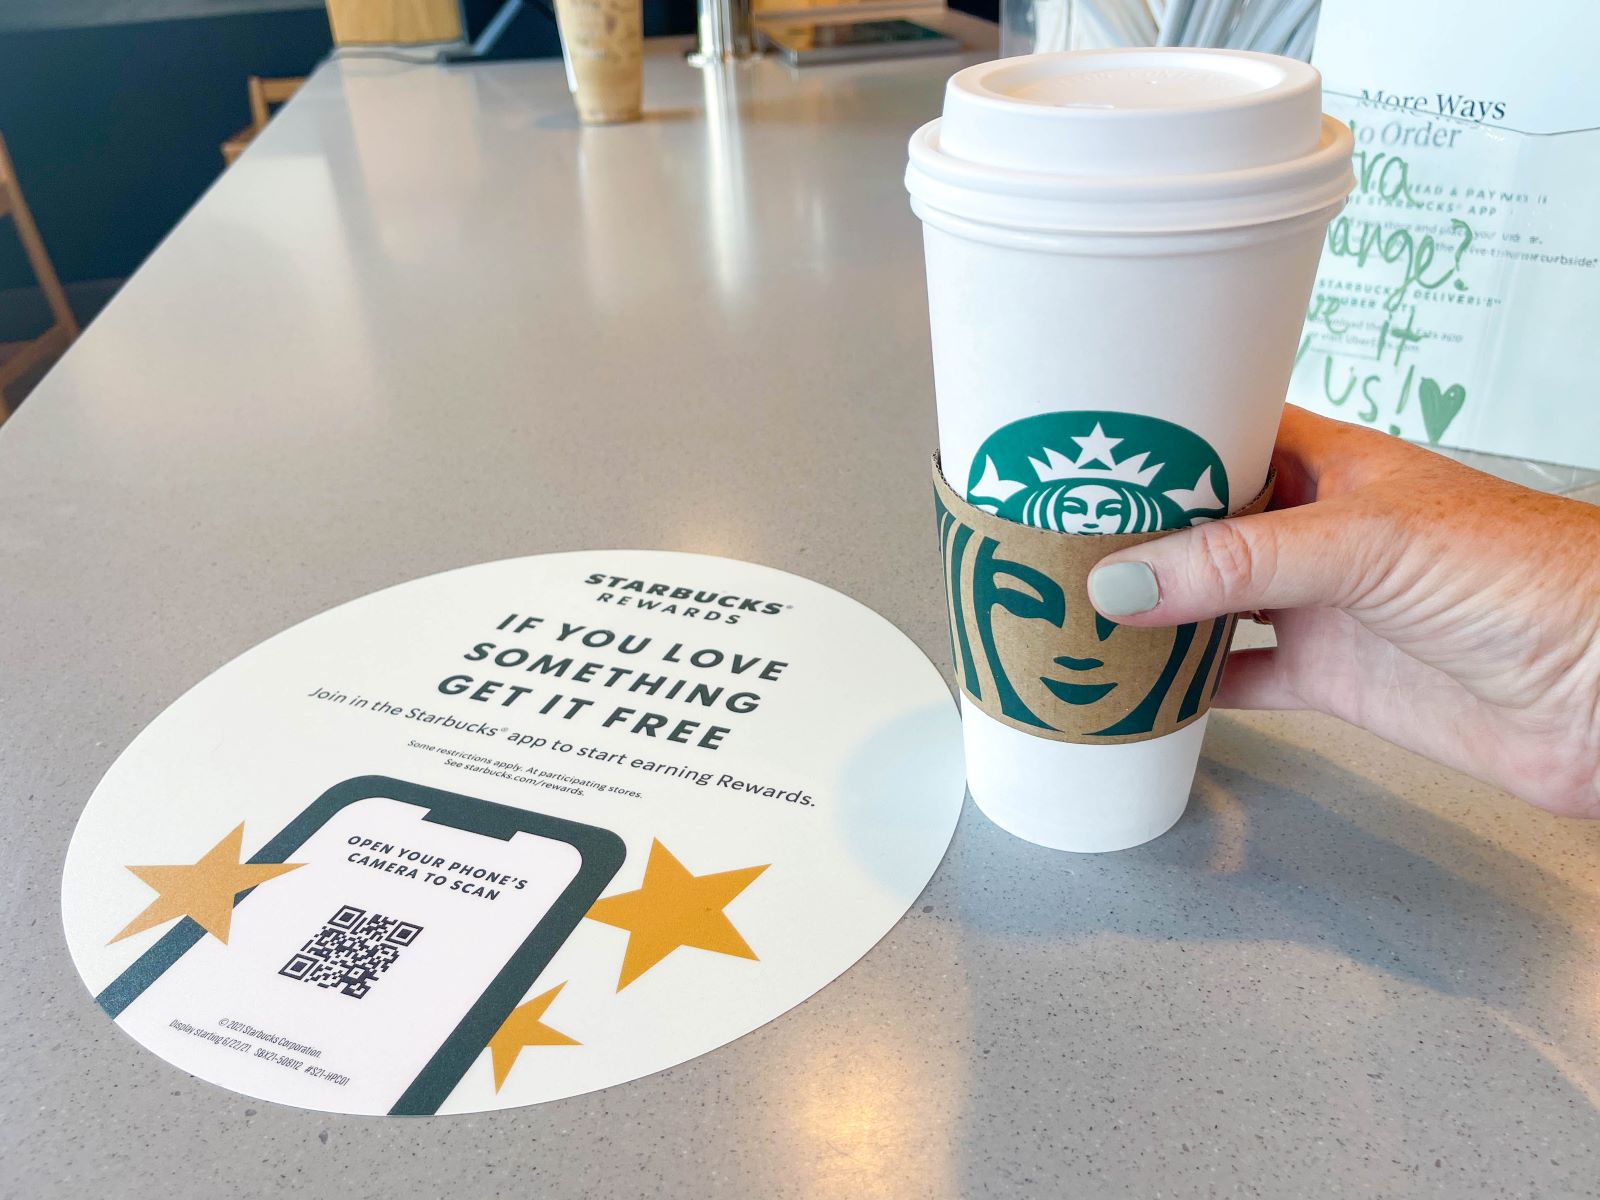 No Starbucks Birthday Reward? Find Out Why!